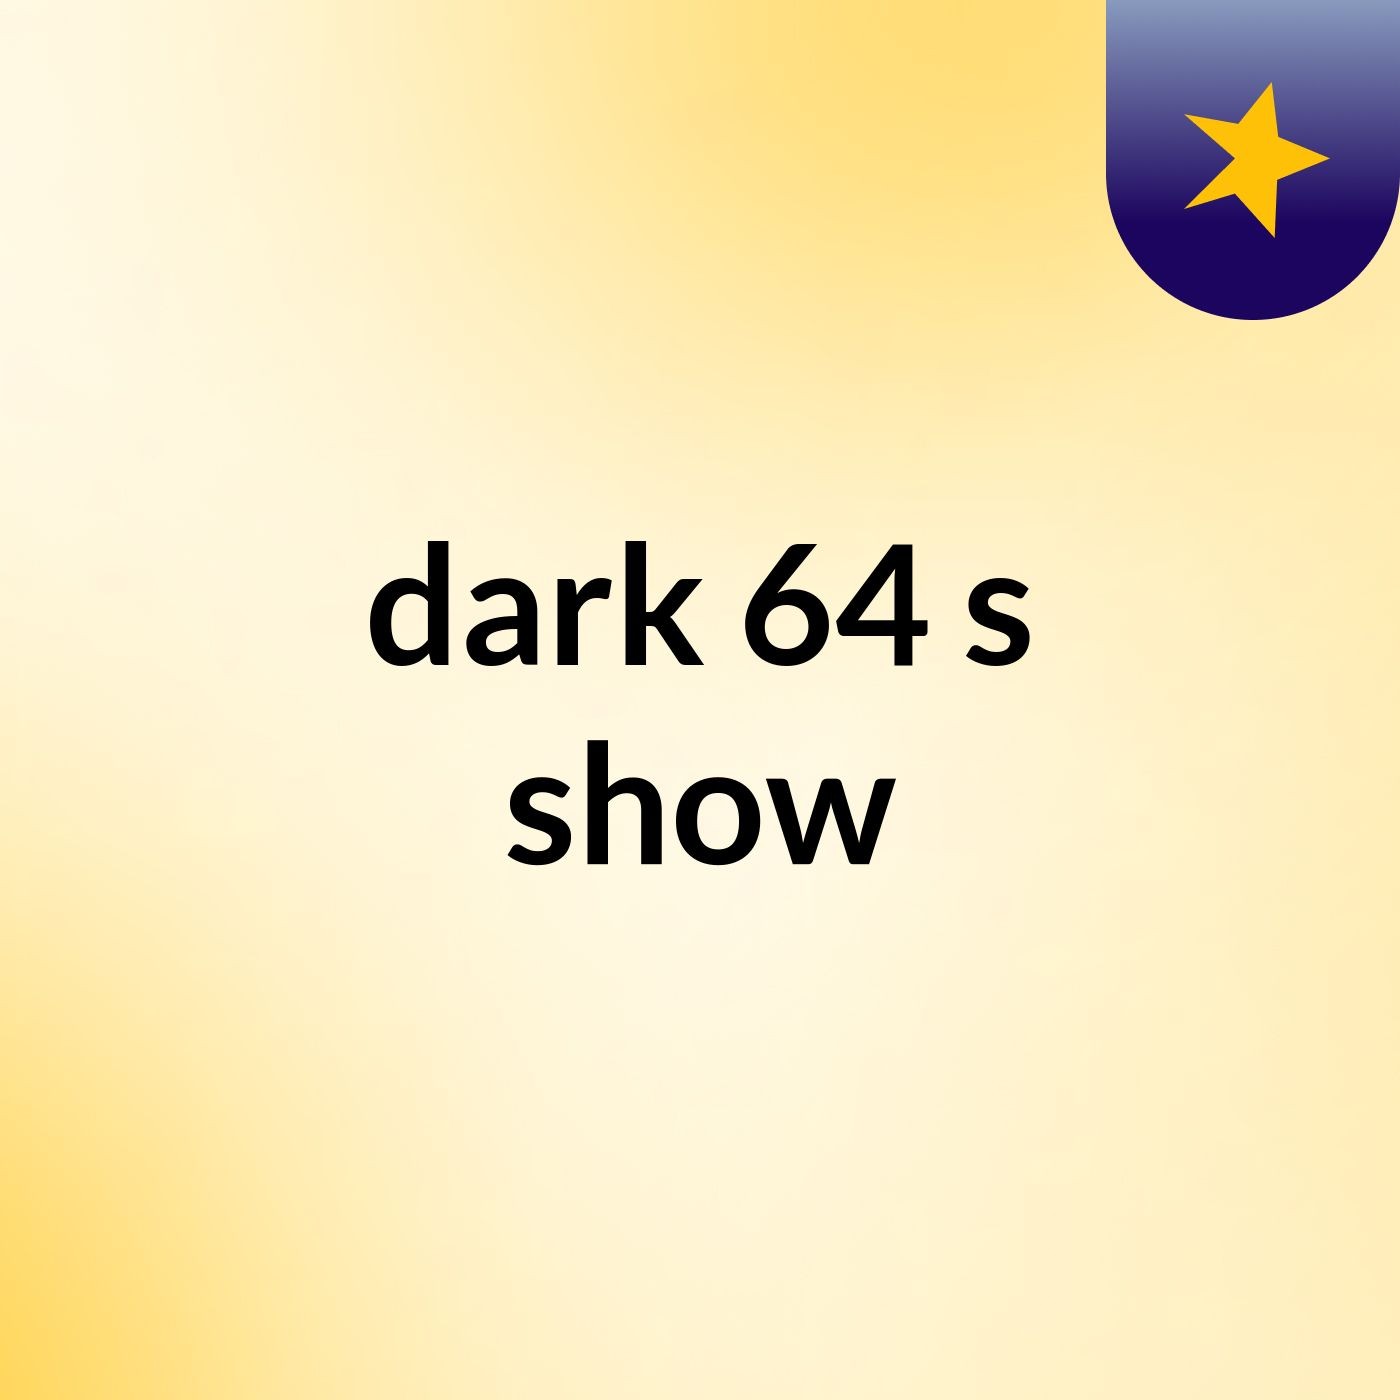 dark 64's show